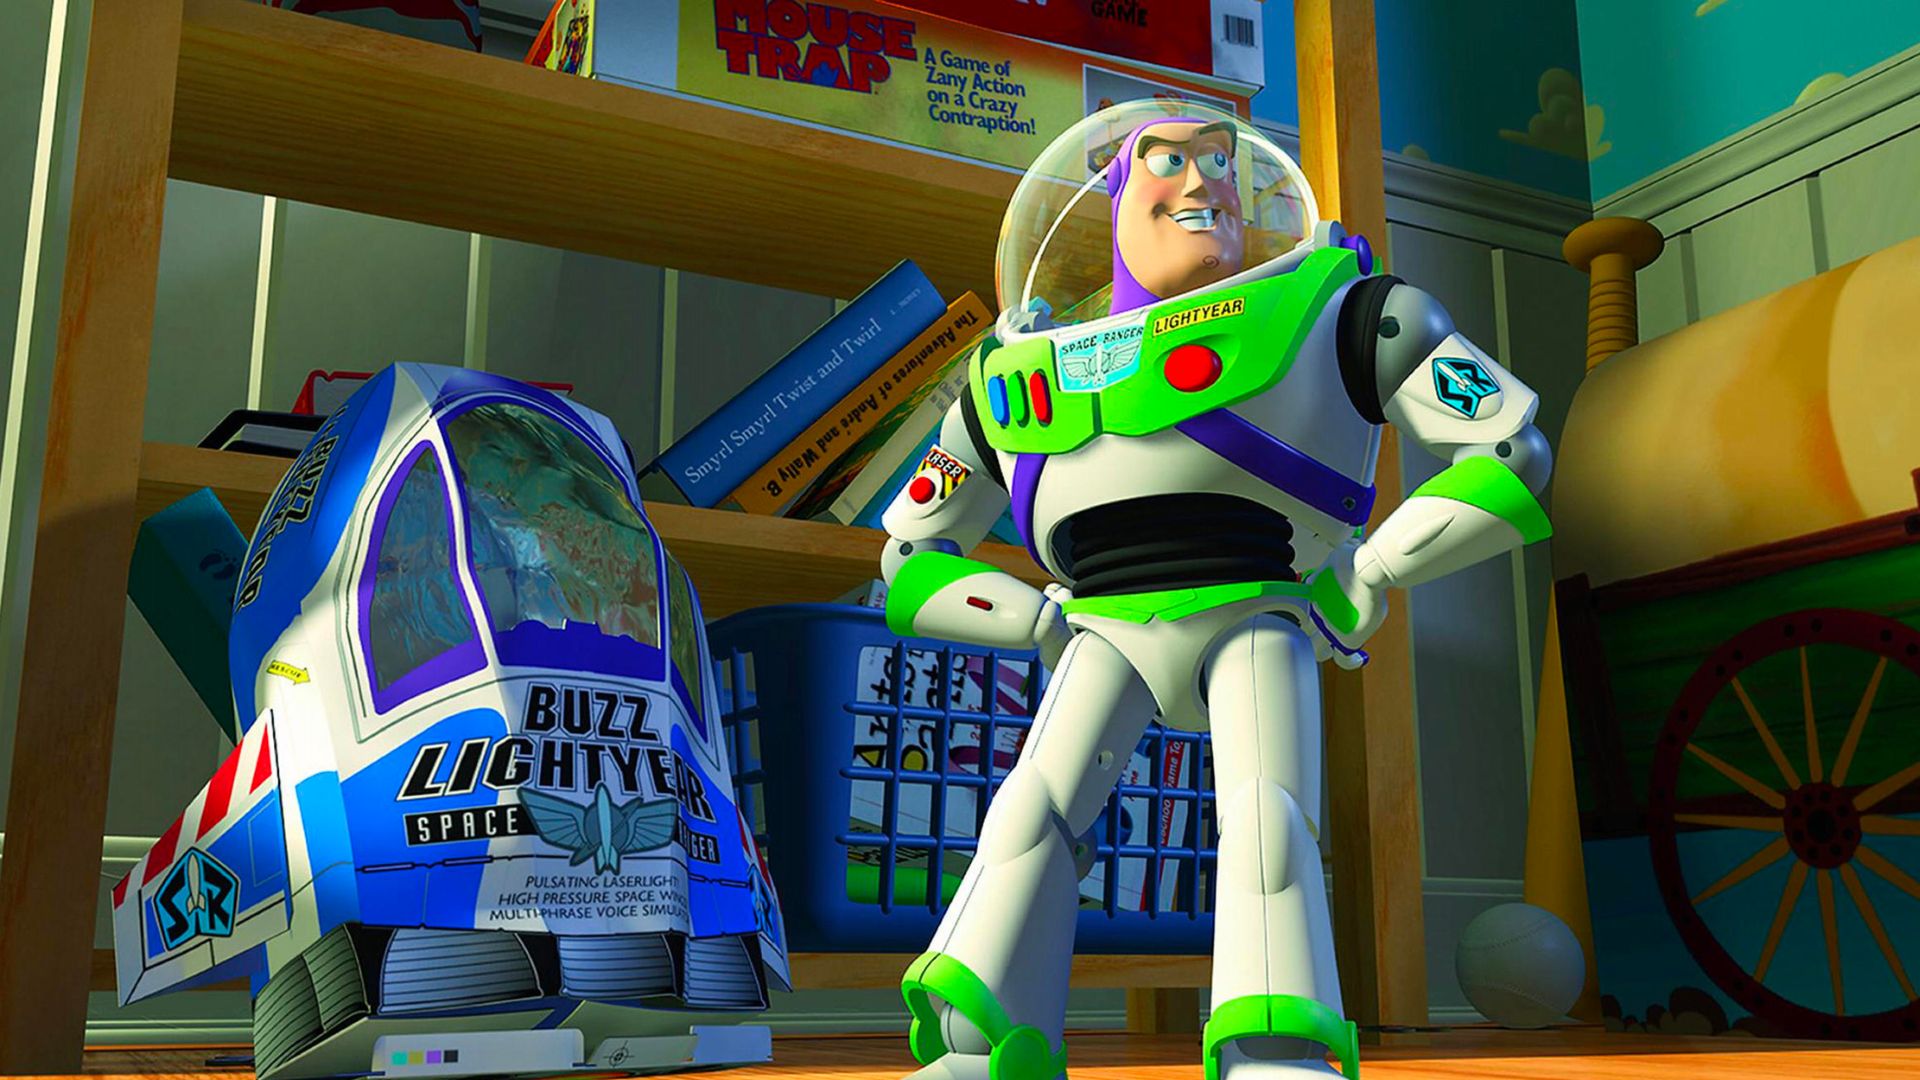 Buzz Lightyear Toy Story 5